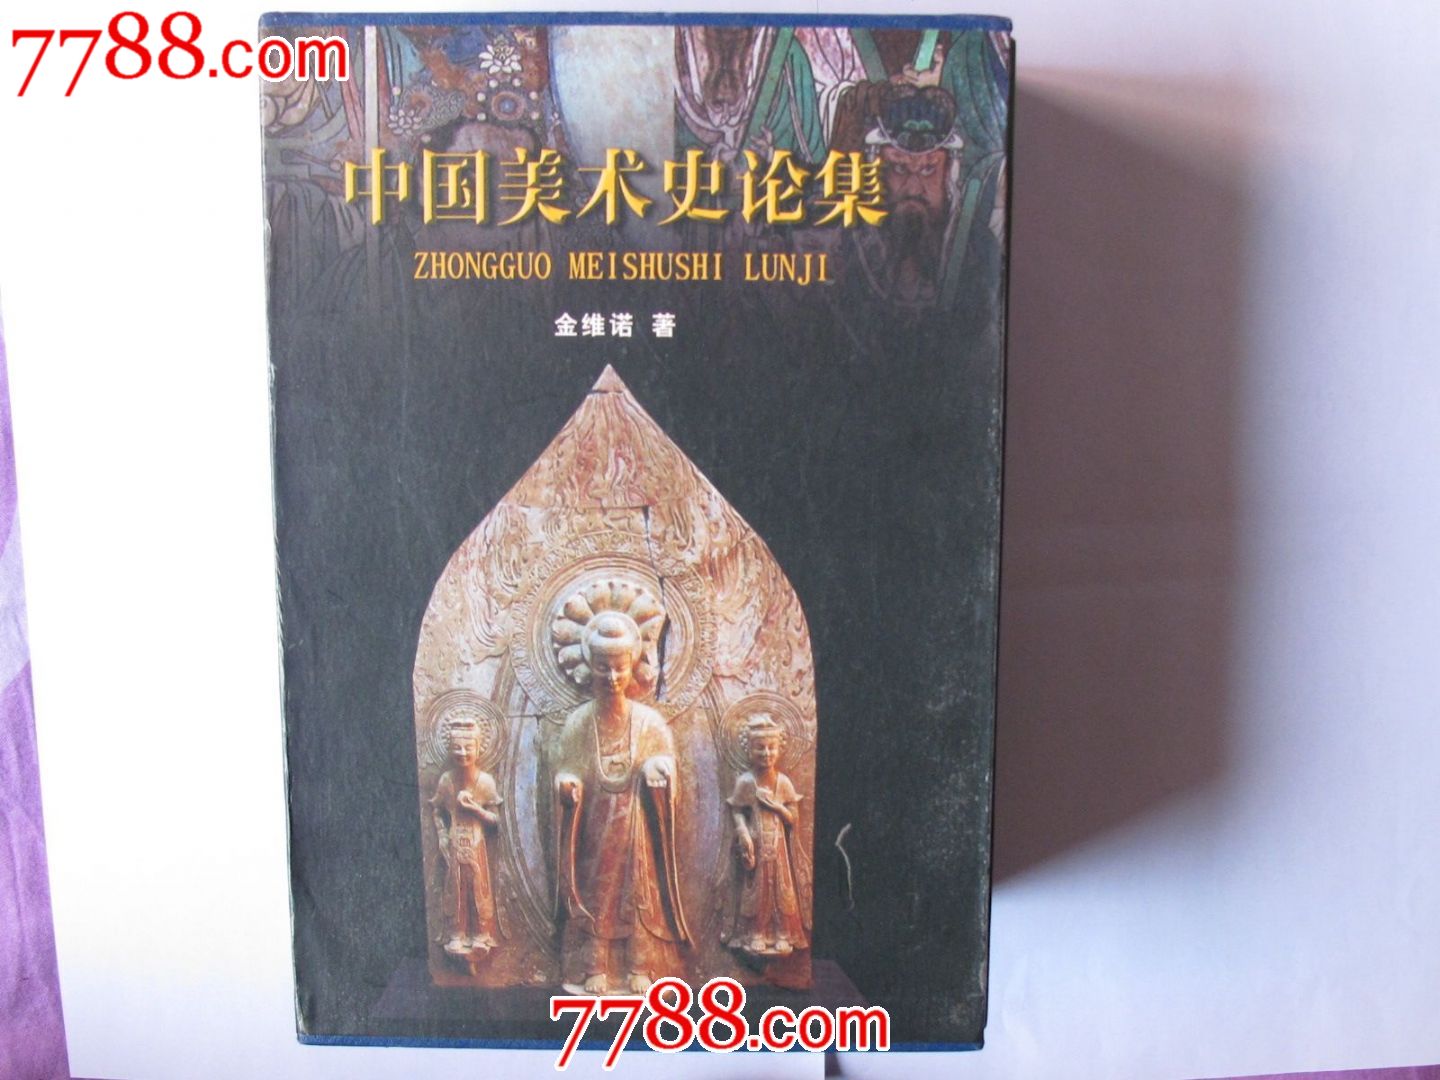 75折售《中国美术史论集》(上,中,下)卷,金维诺